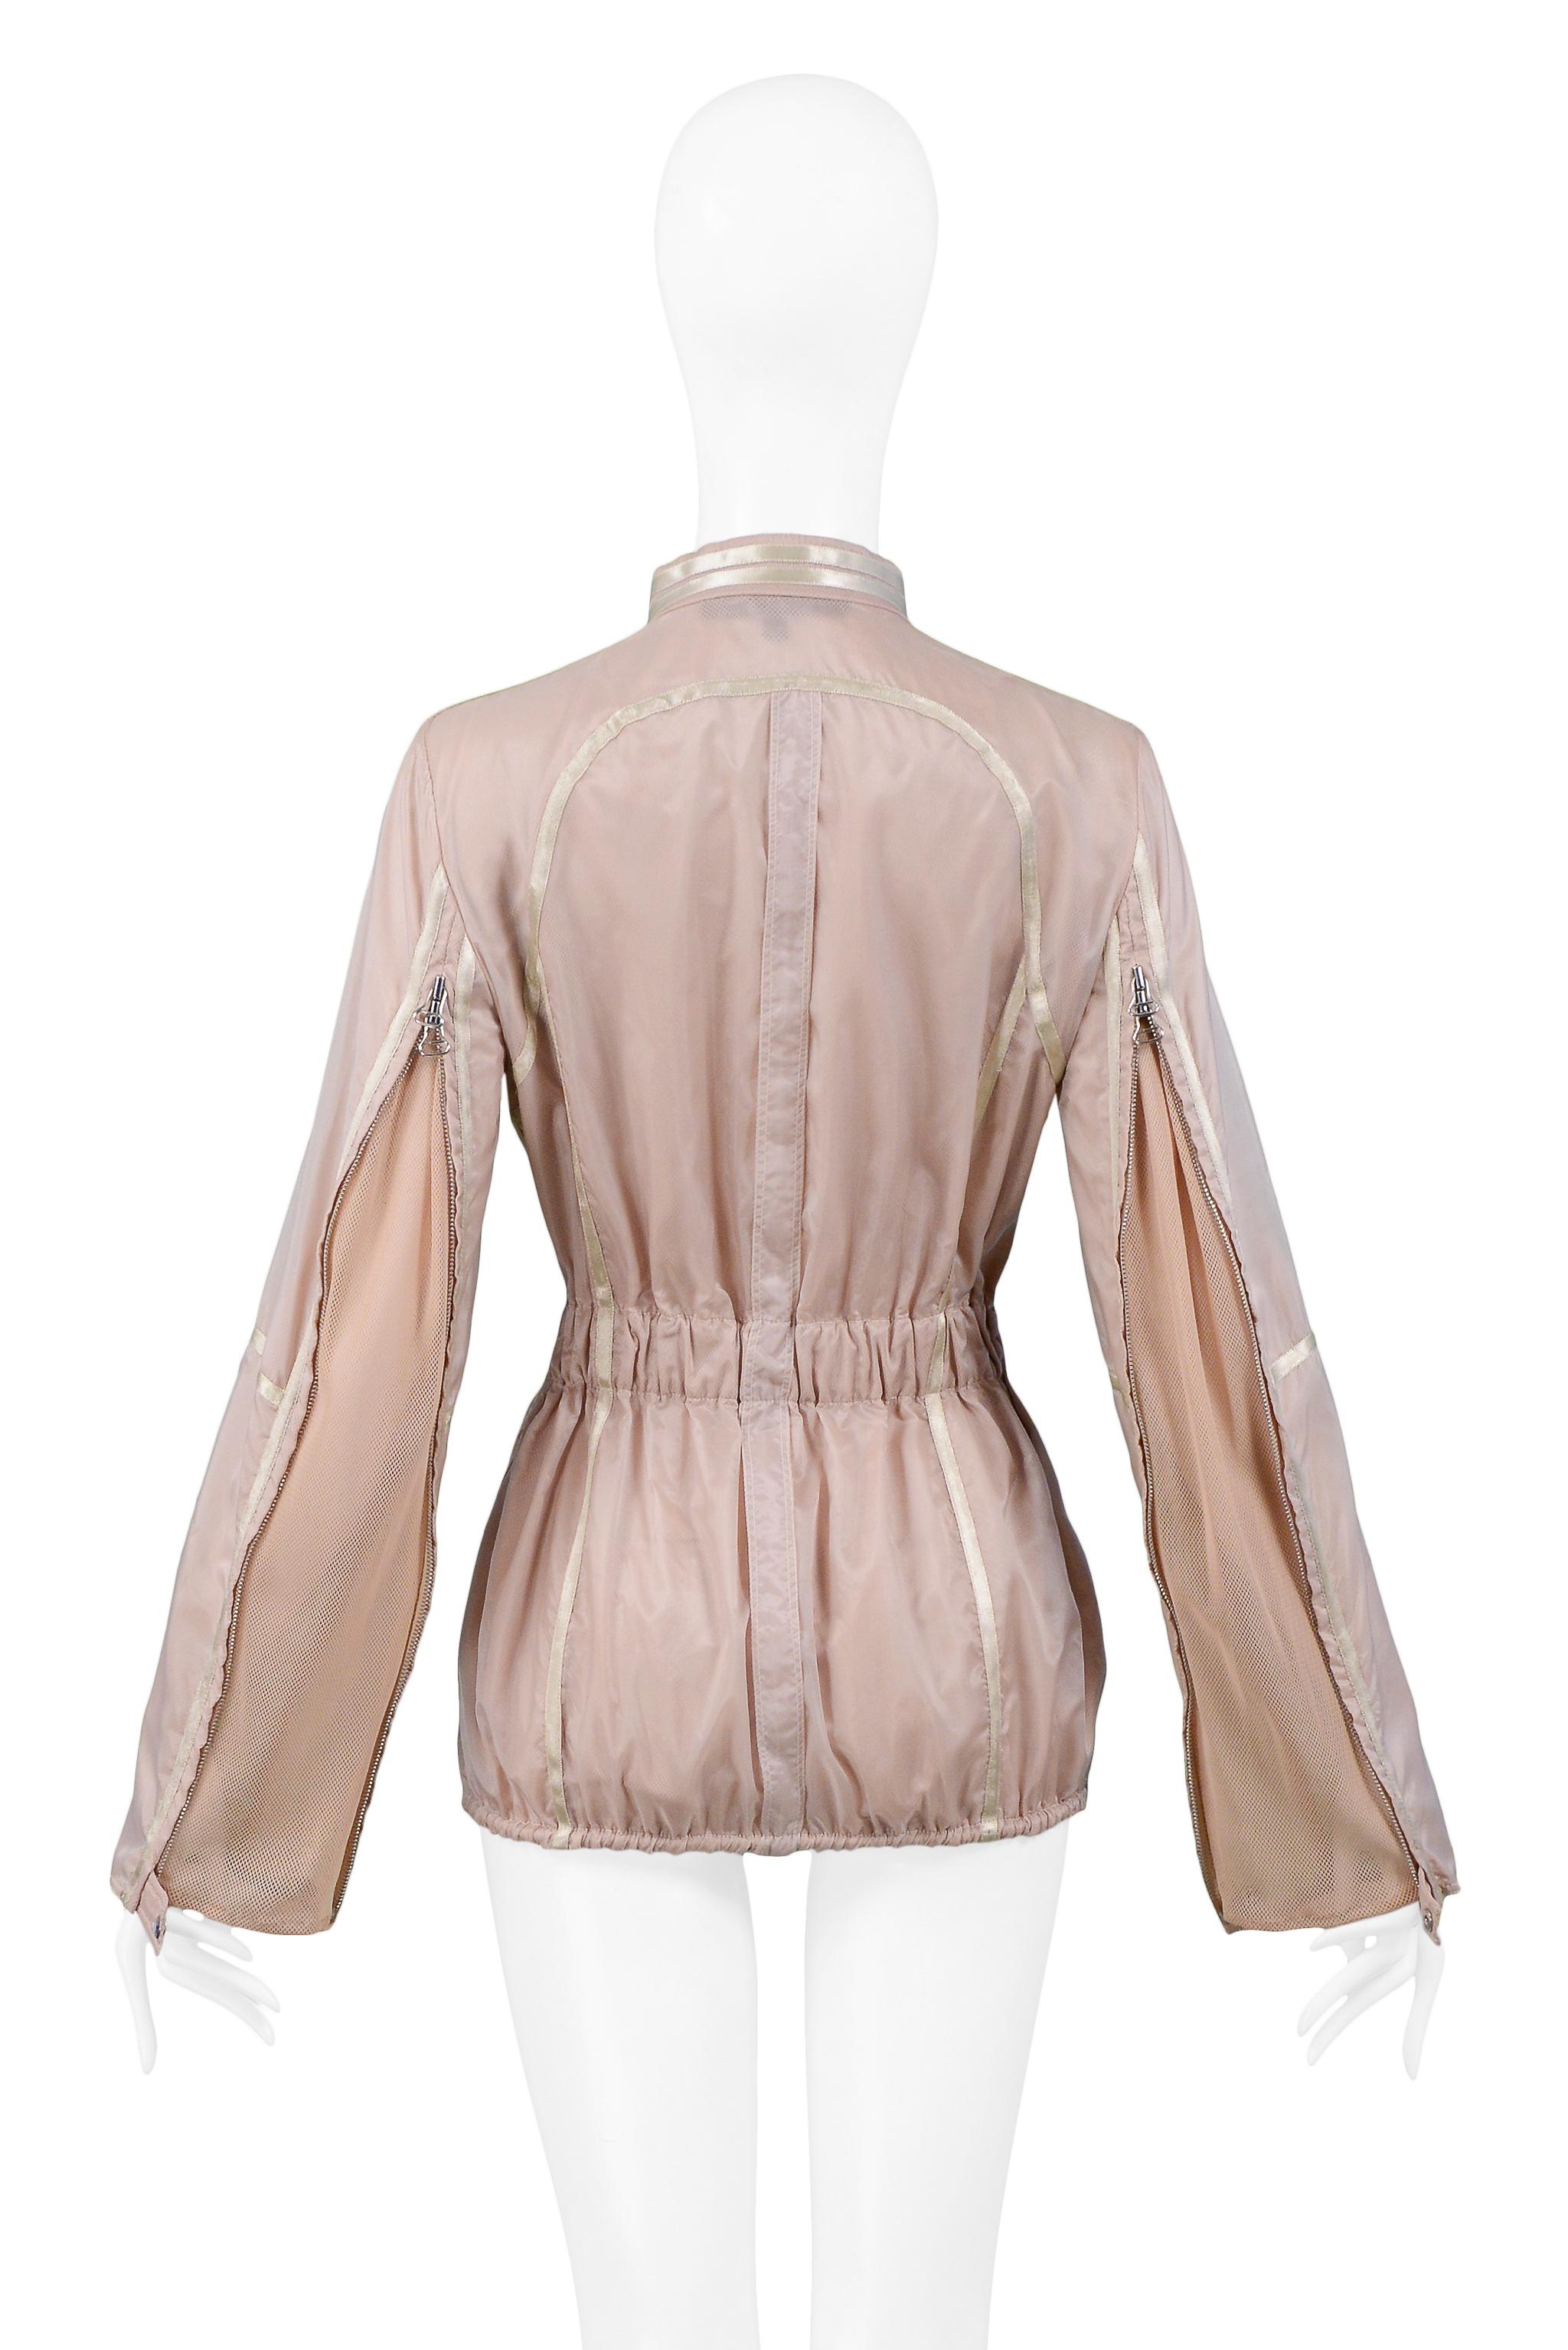 Beige Gianfranco Ferre Pink Nylon Windbreaker Jacket 2005 For Sale